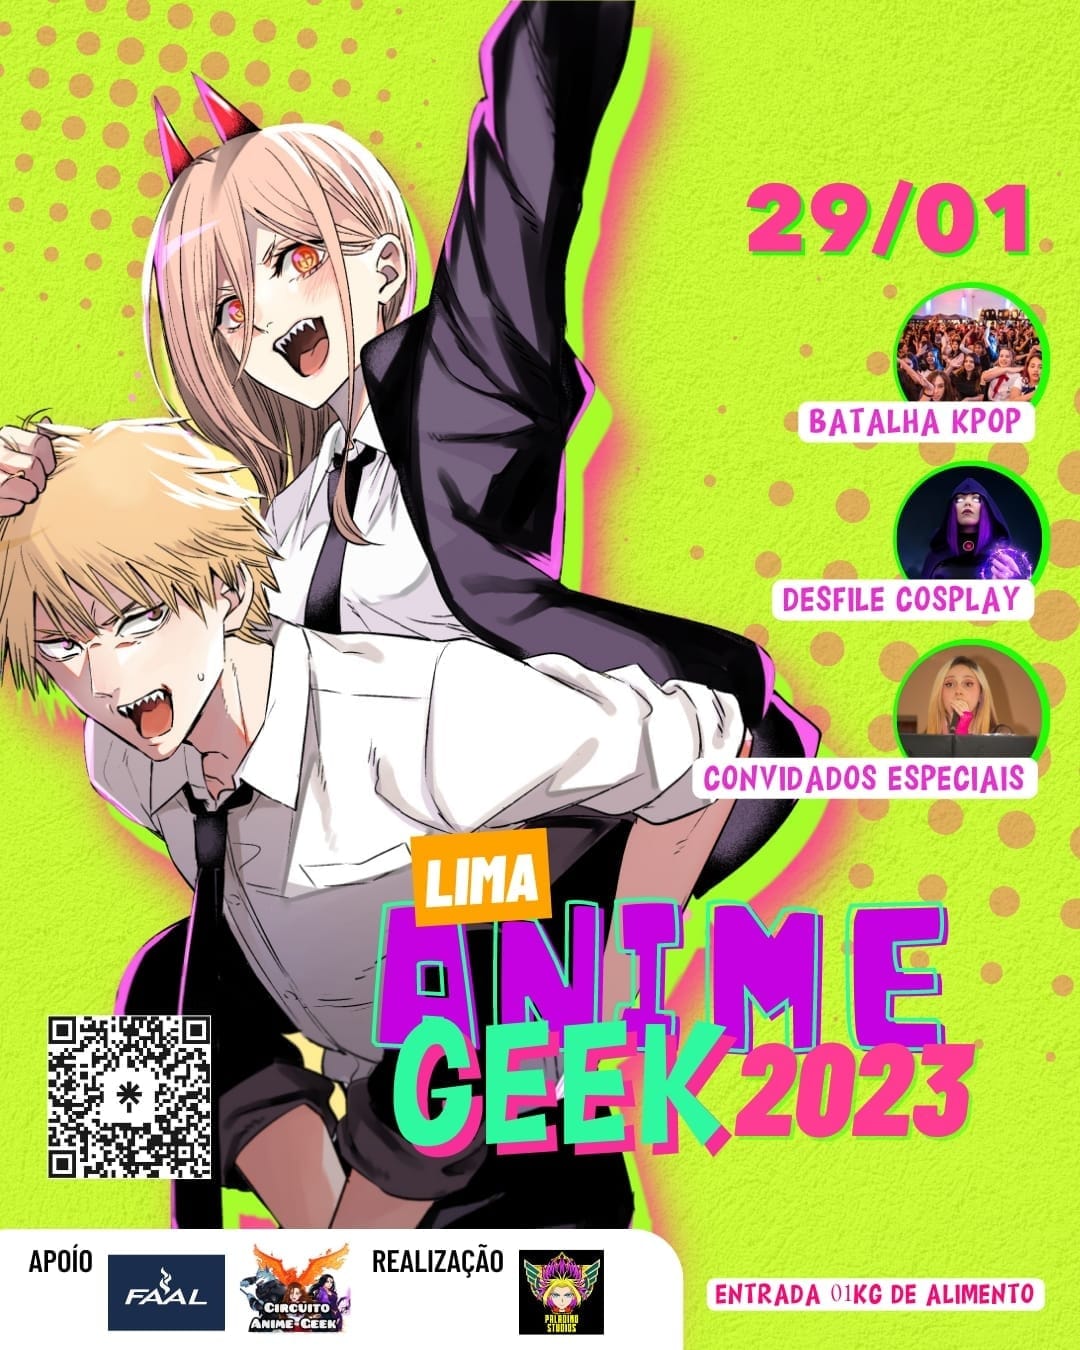 Confira quatro animes para assistir nesse feriado - GKPB - Geek Publicitário